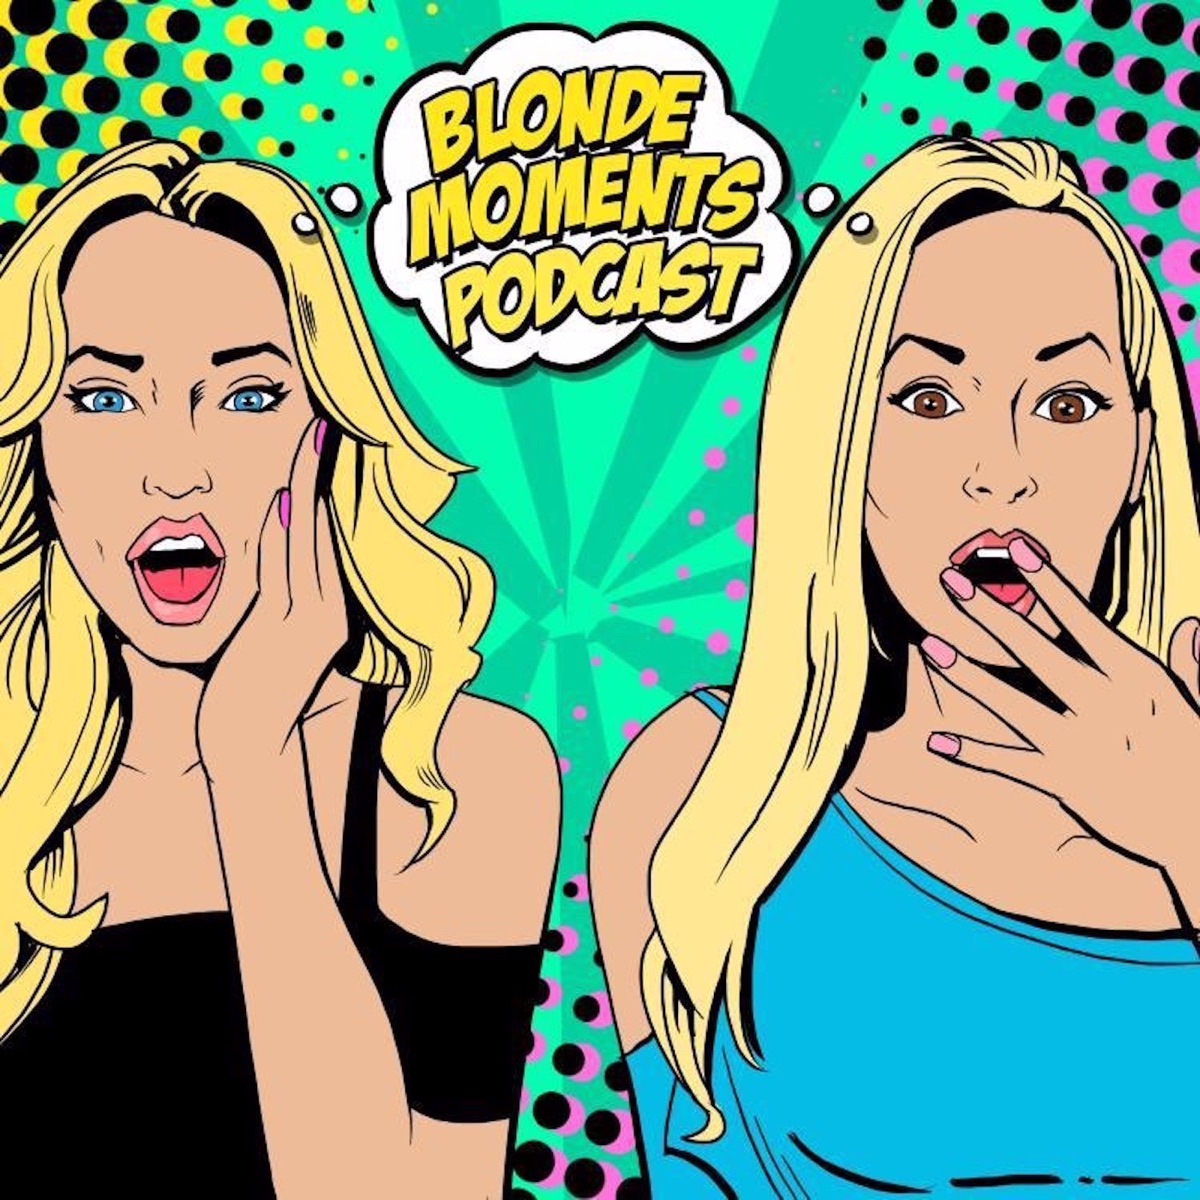 Anal Gina Lisa - Blonde Moments Podcast â€“ Podcast â€“ Podtail